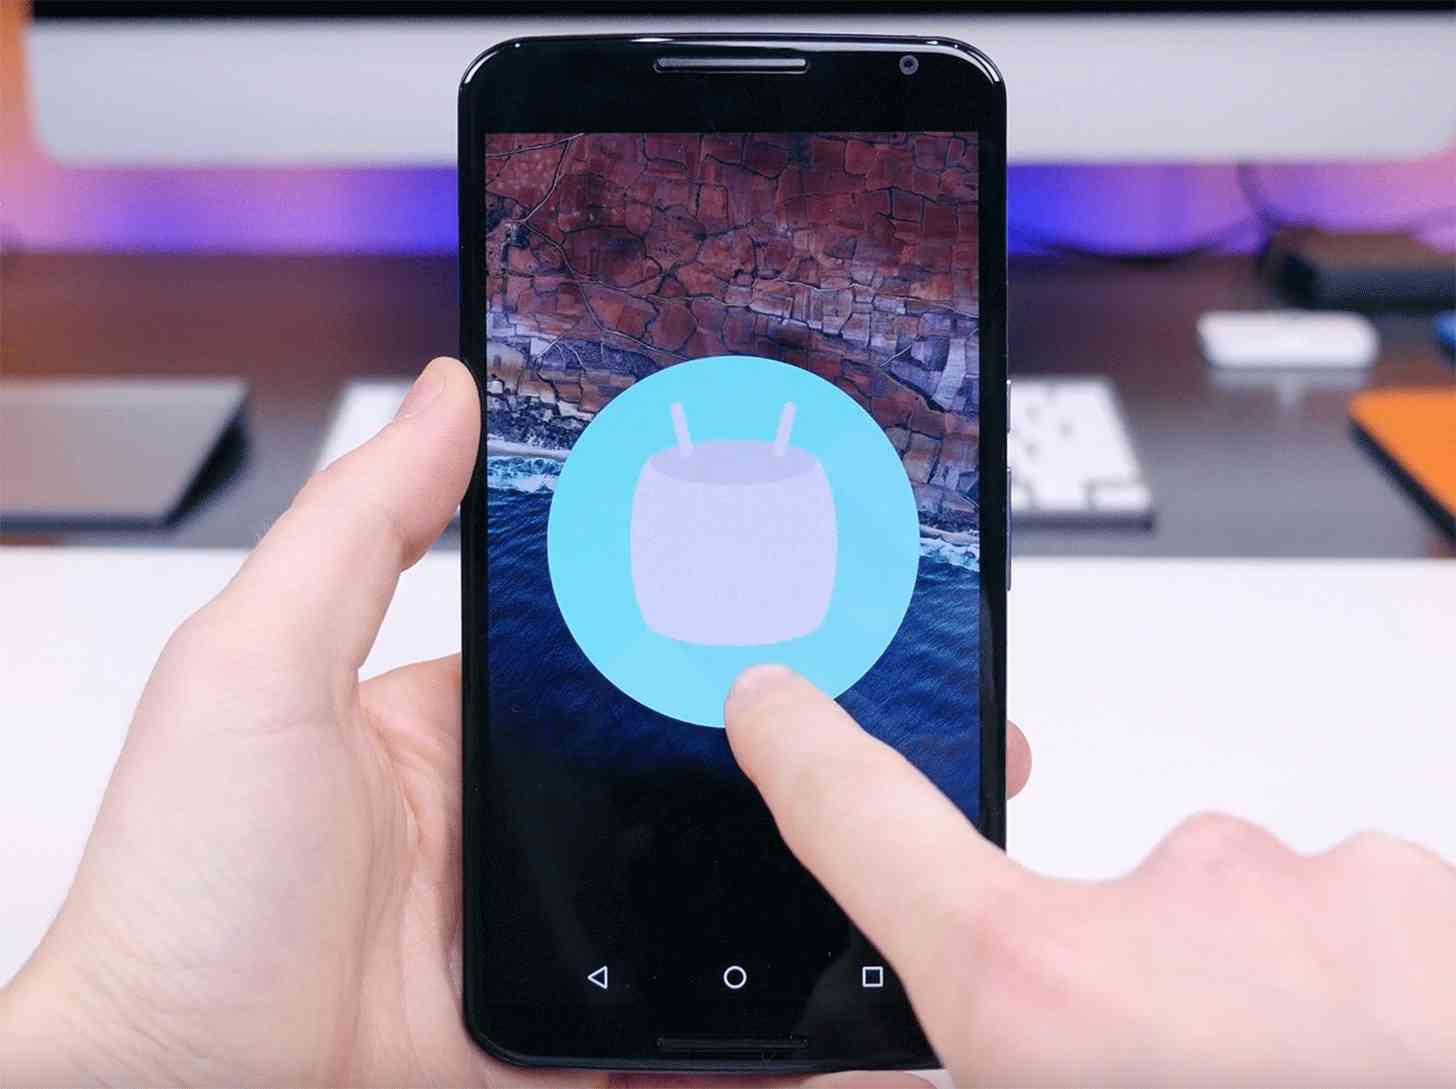 Nexus 6 Android 6.0 Marshmallow